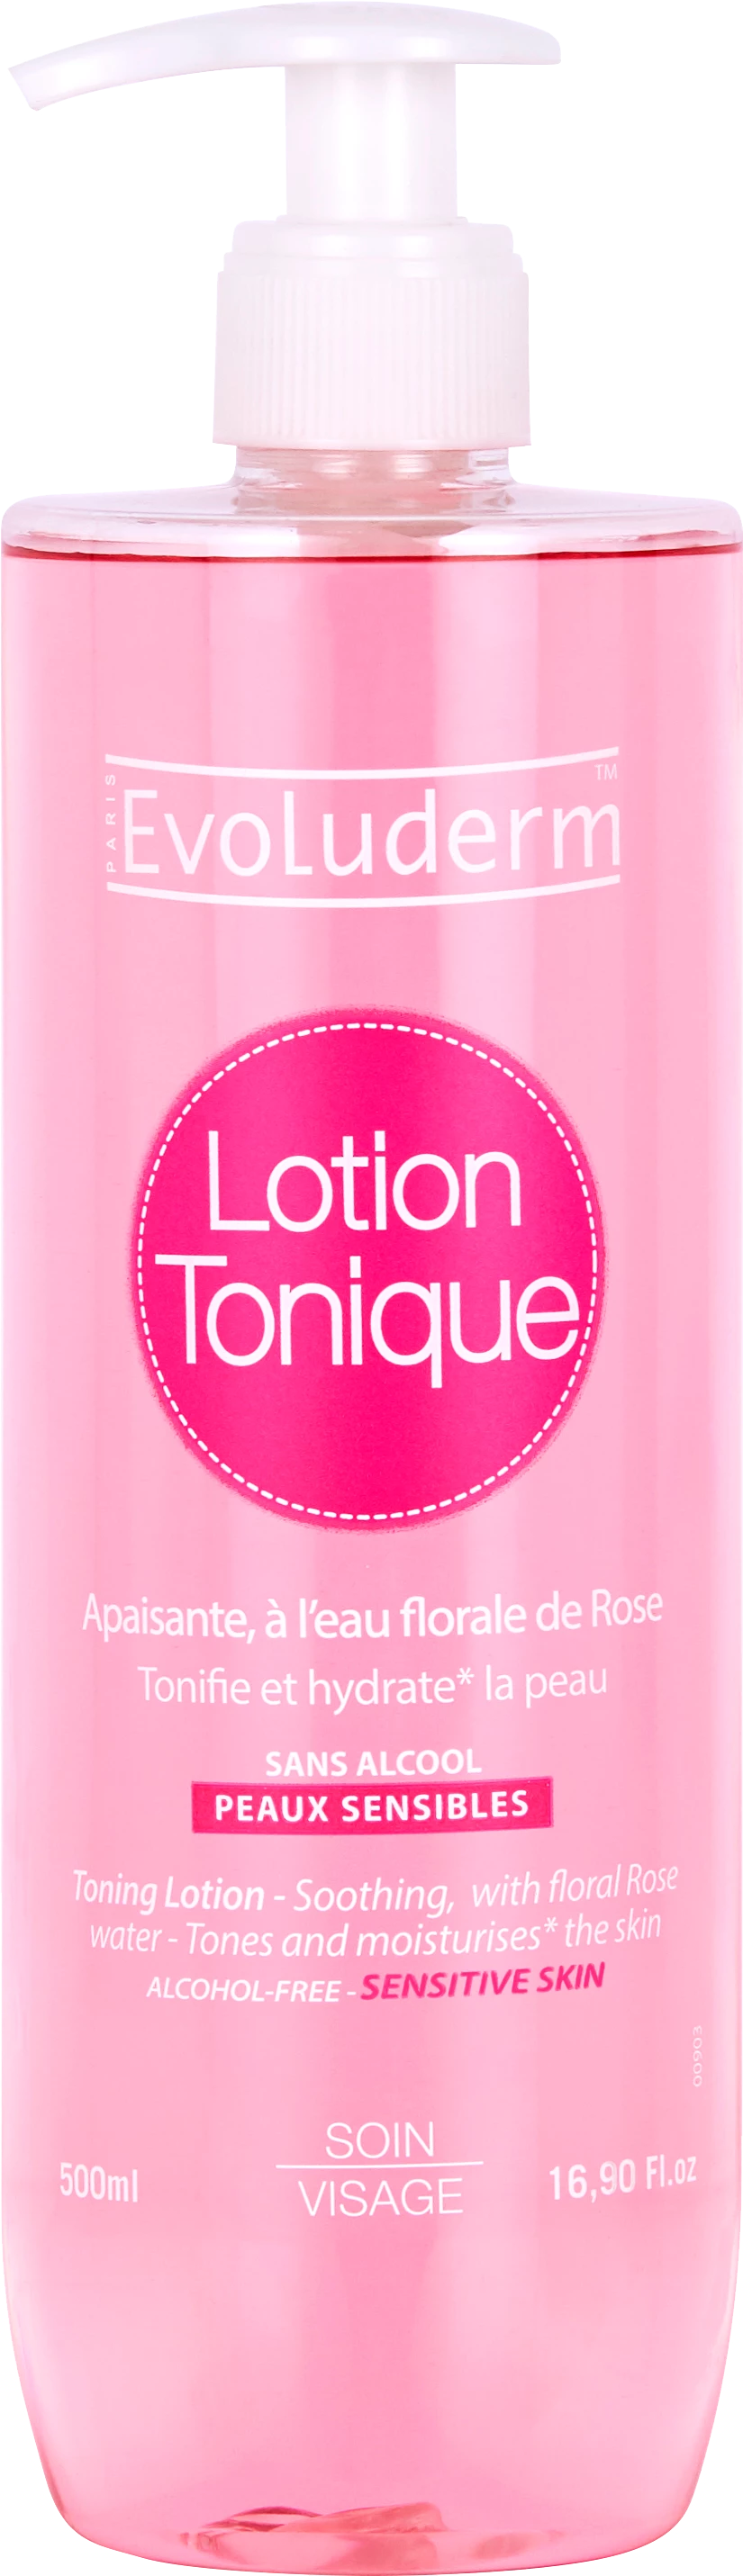 Lotion Tonique Apaisante Peaux Sensibles 500ml - Evoluderm